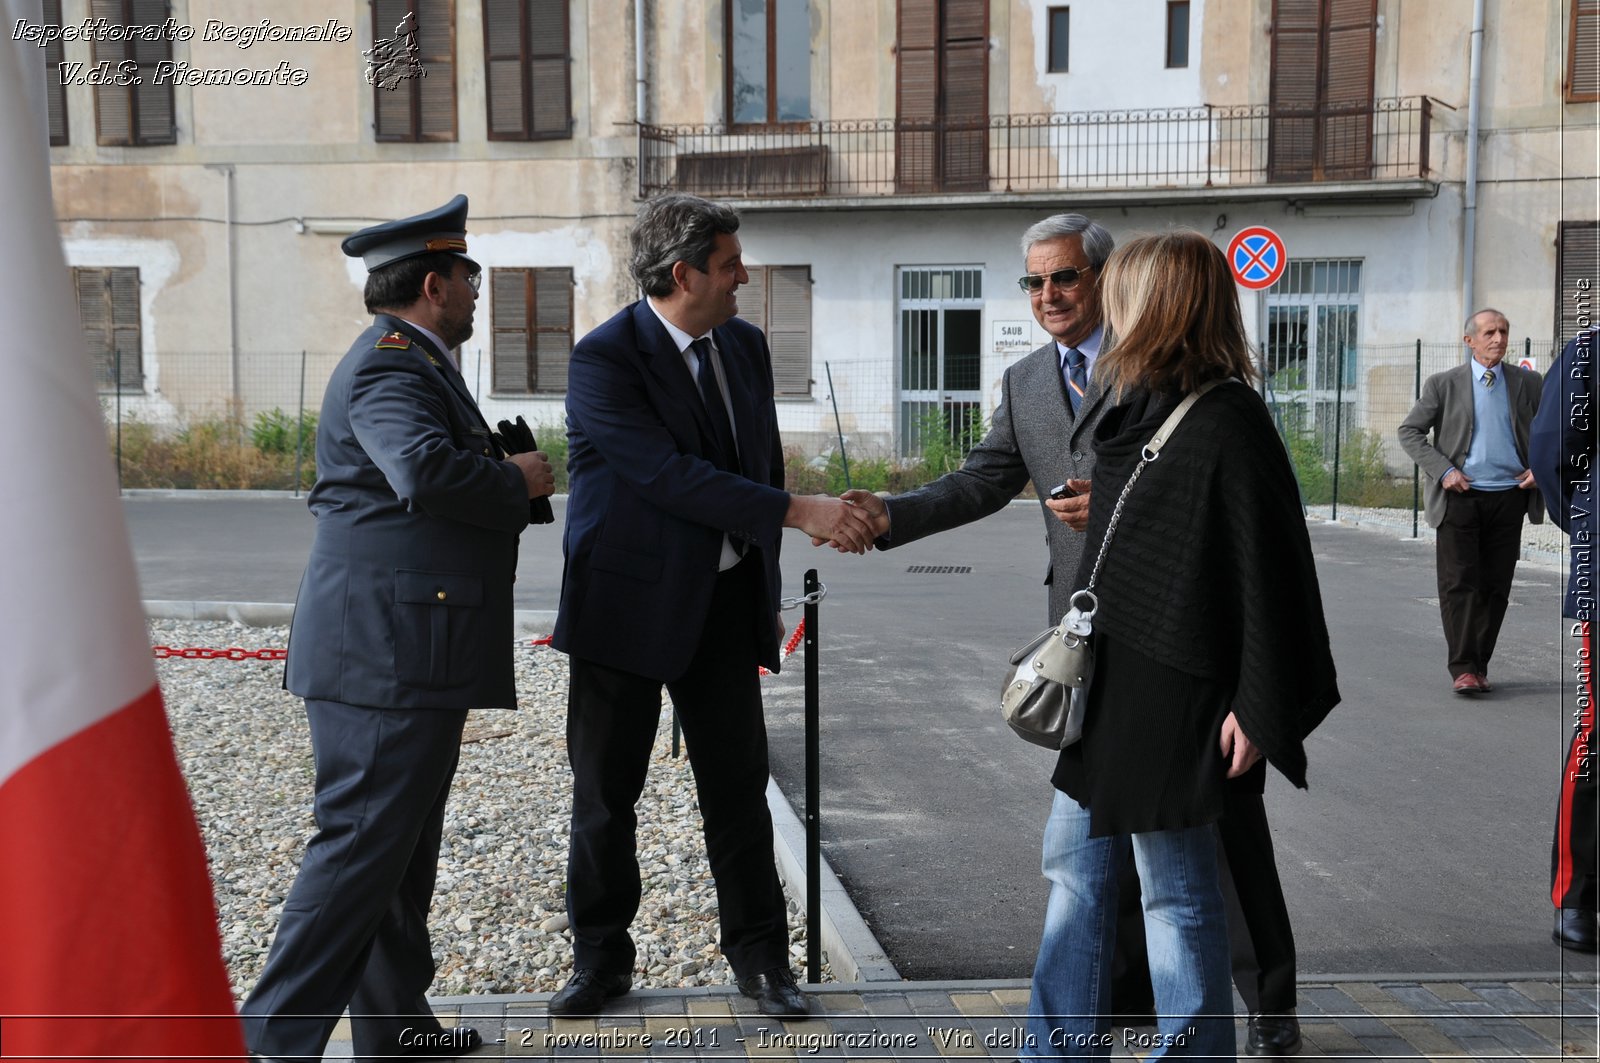 Canelli  - 2 novembre 2011 - Inaugurazione "Via della Croce Rossa" -  Croce Rossa Italiana - Ispettorato Regionale Volontari del Soccorso Piemonte